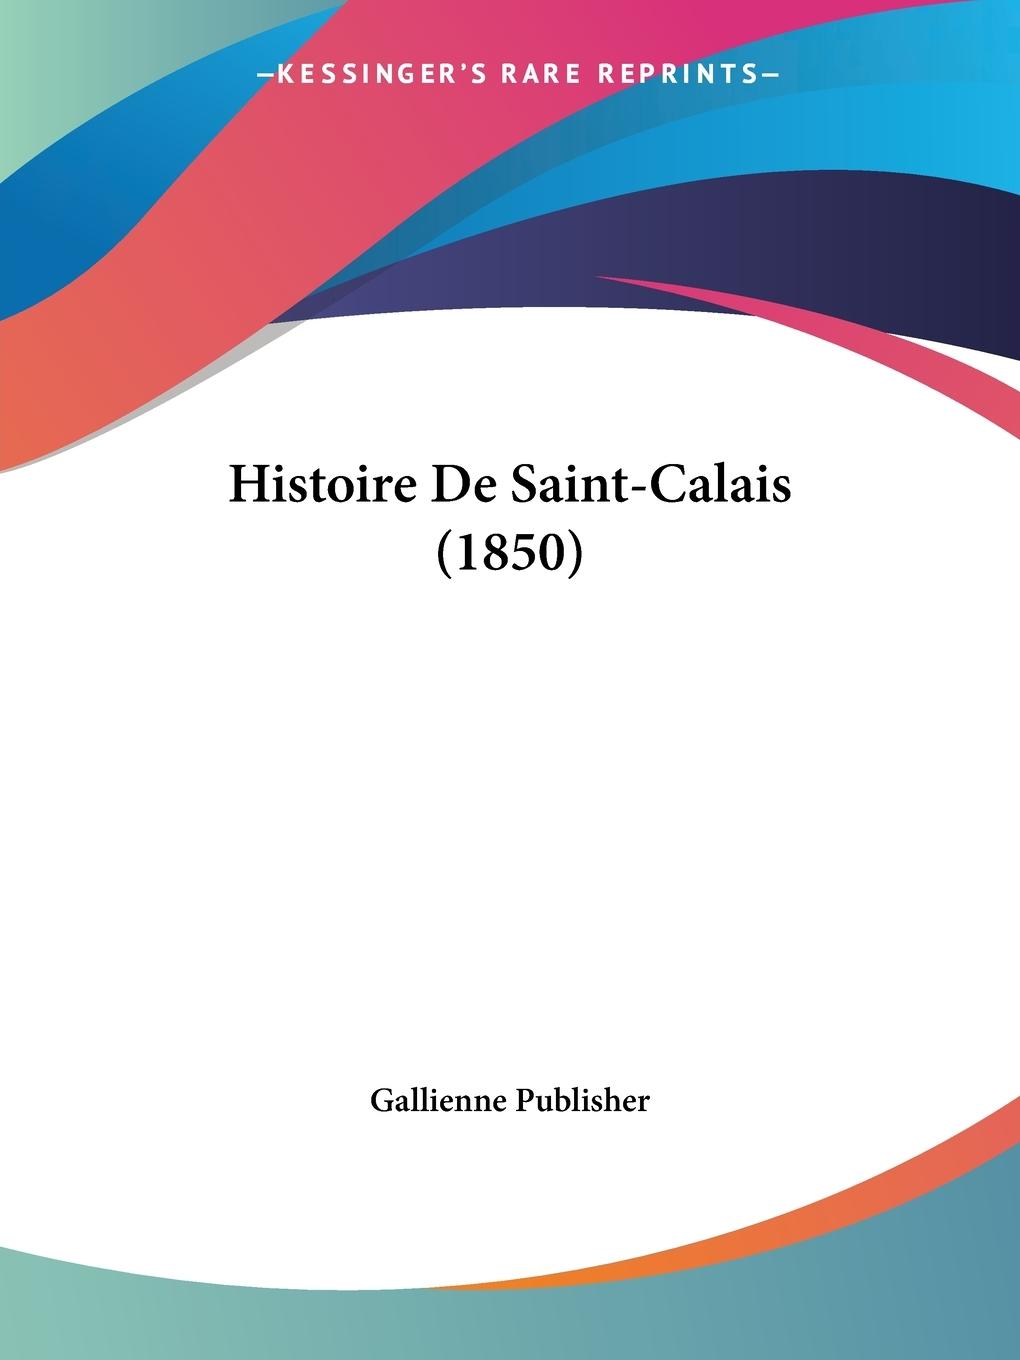 Histoire De Saint-Calais (1850) - Gallienne Publisher